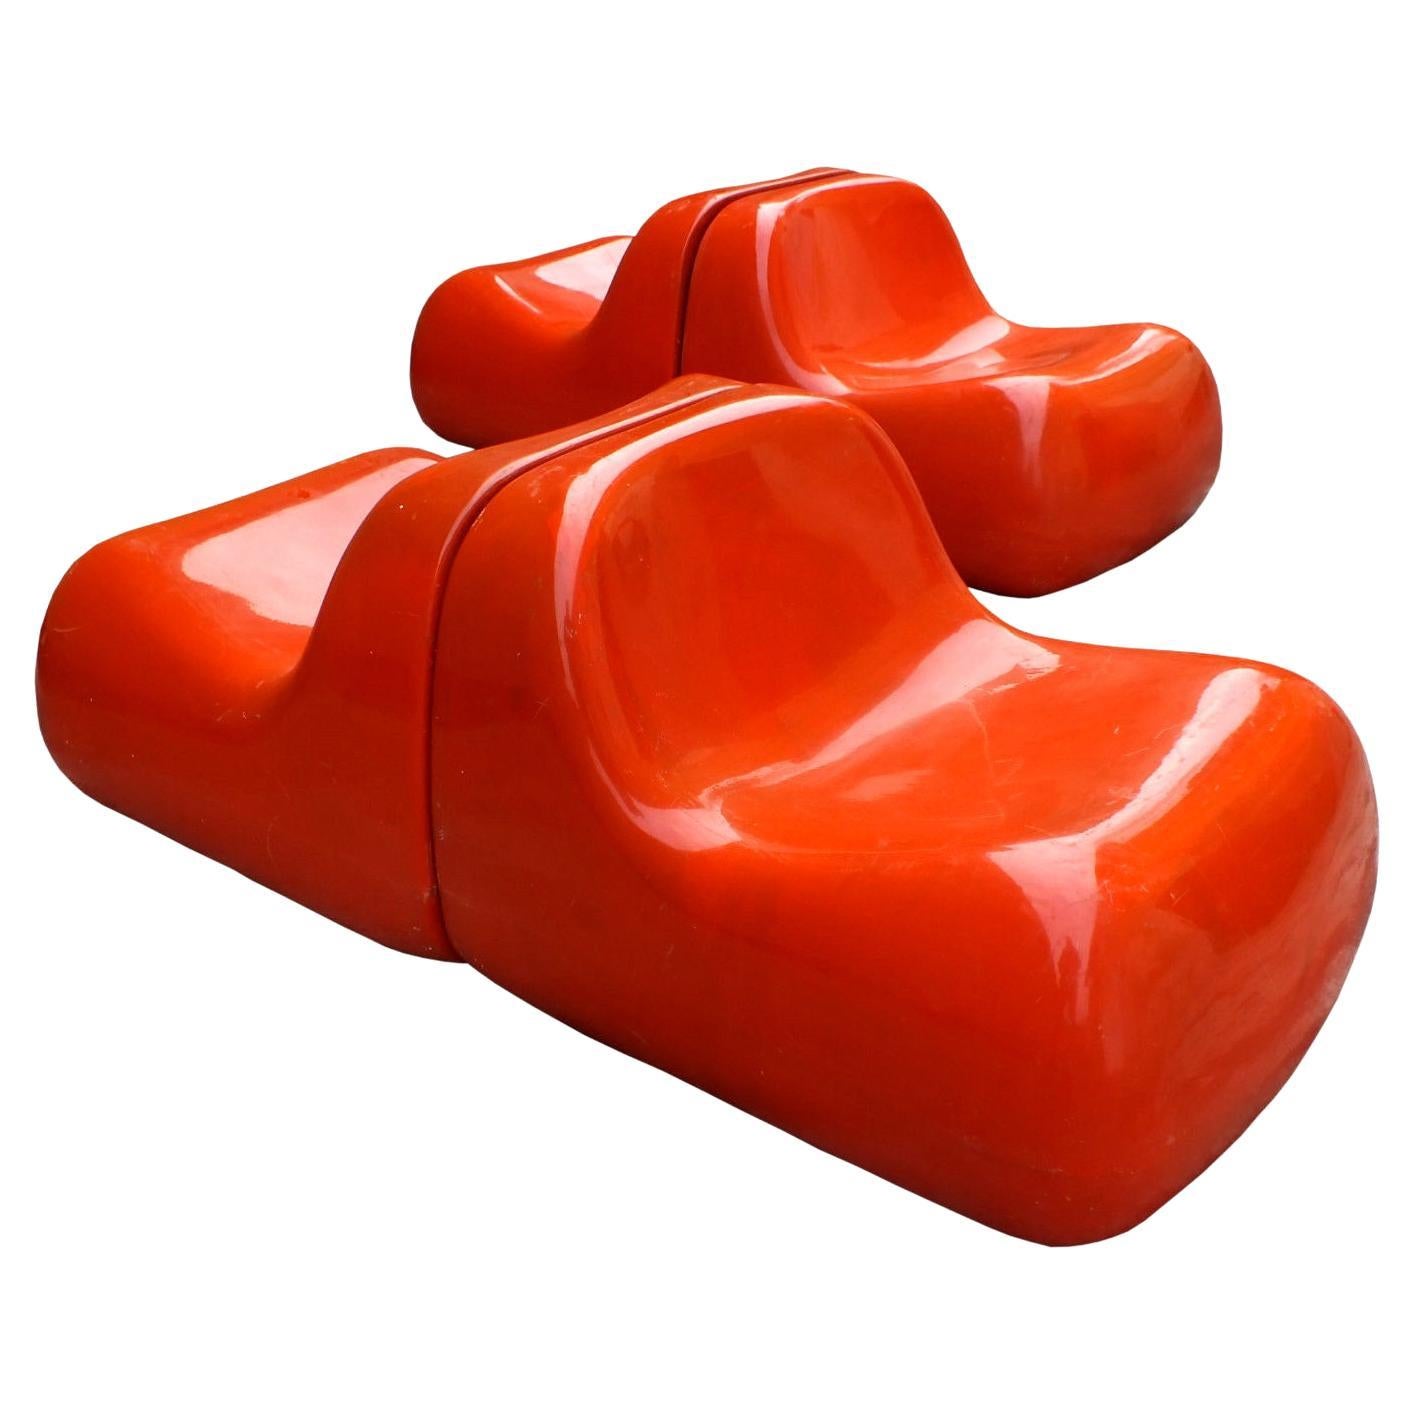 Saporiti Italie année 68 design Alberto Rosselli deux (2)fauteuils jumbo fibre de verre